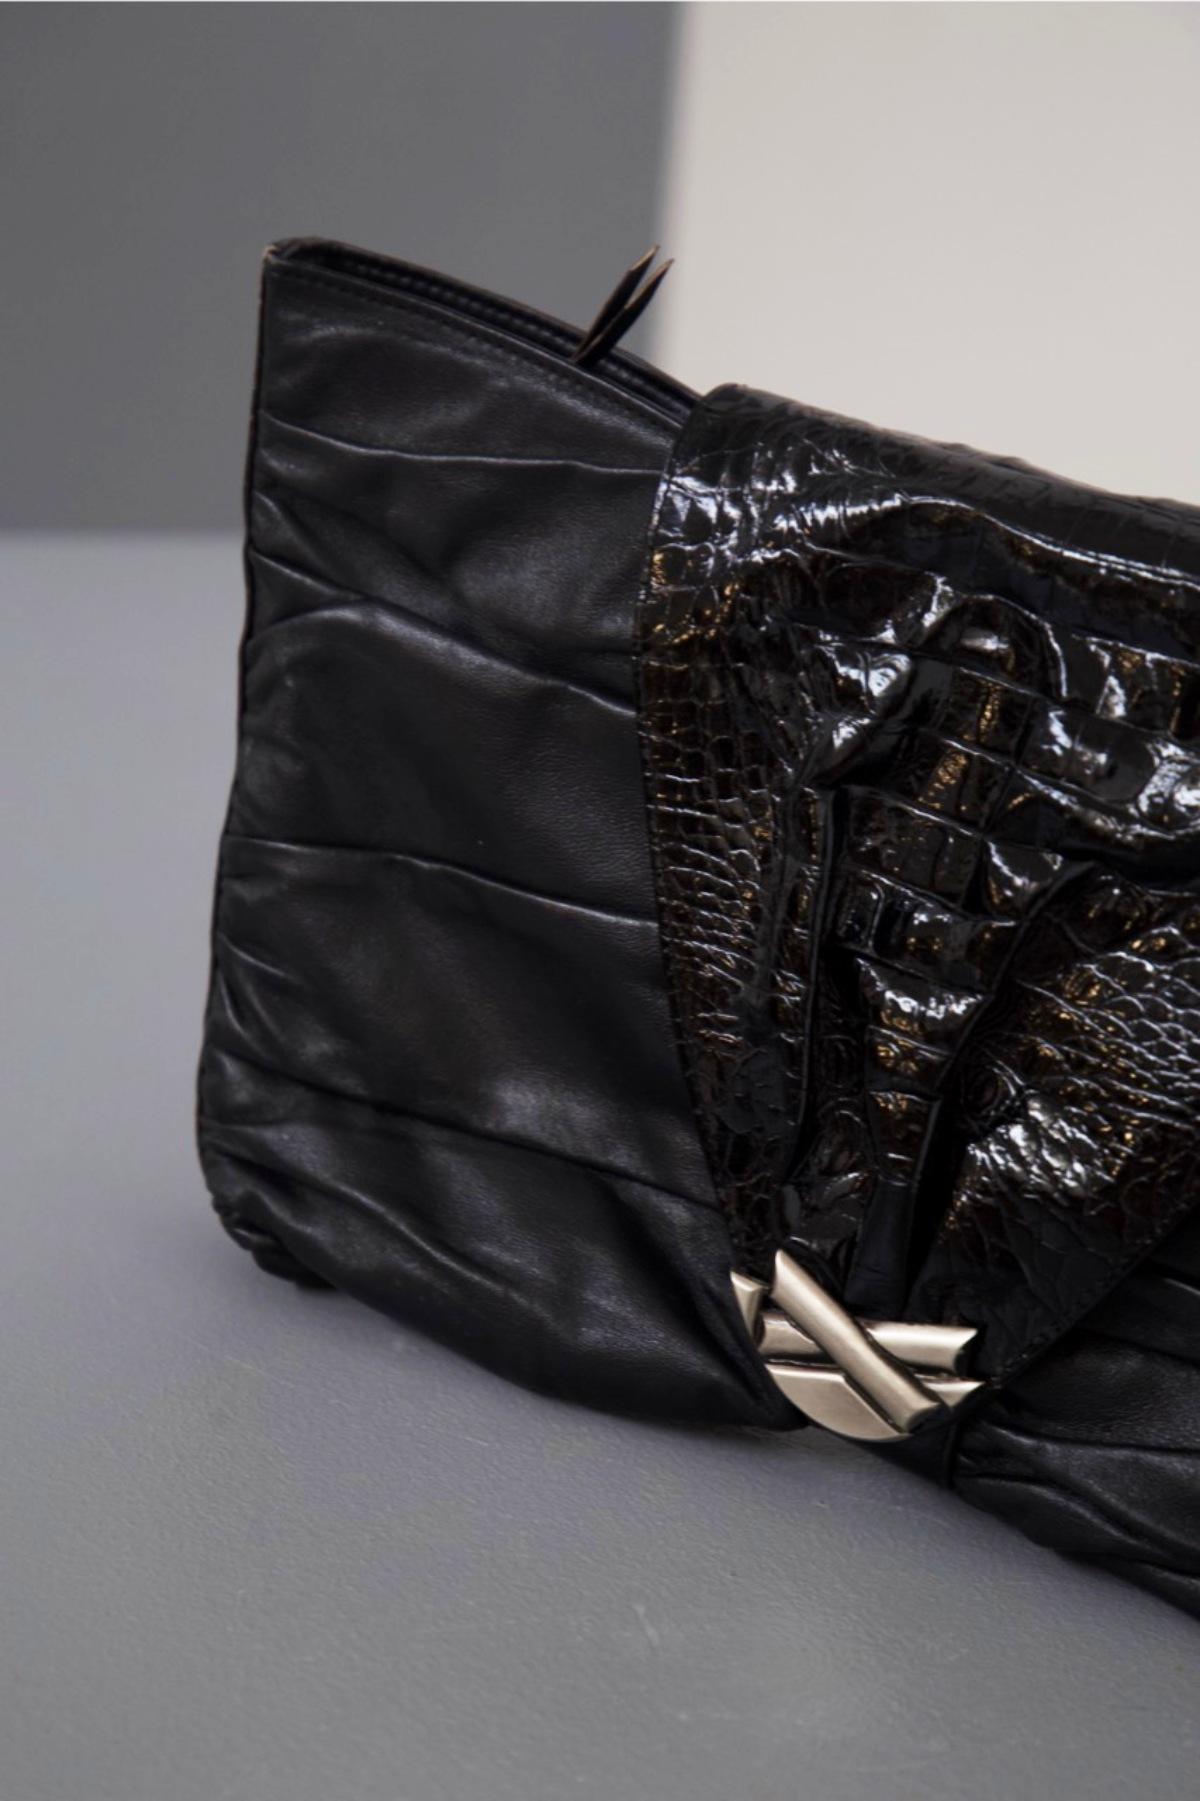 Elegante schwarze Leder-Clutch-Tasche, entworfen von Gianni Versace in den 1980er Jahren, feine italienische Handwerkskunst.
ORIGINALETIKETT UND -MARKE.
Die Tasche hat eine klassische, abgeschrägte, rechteckige Form, mit sehr weichen Linien aufgrund